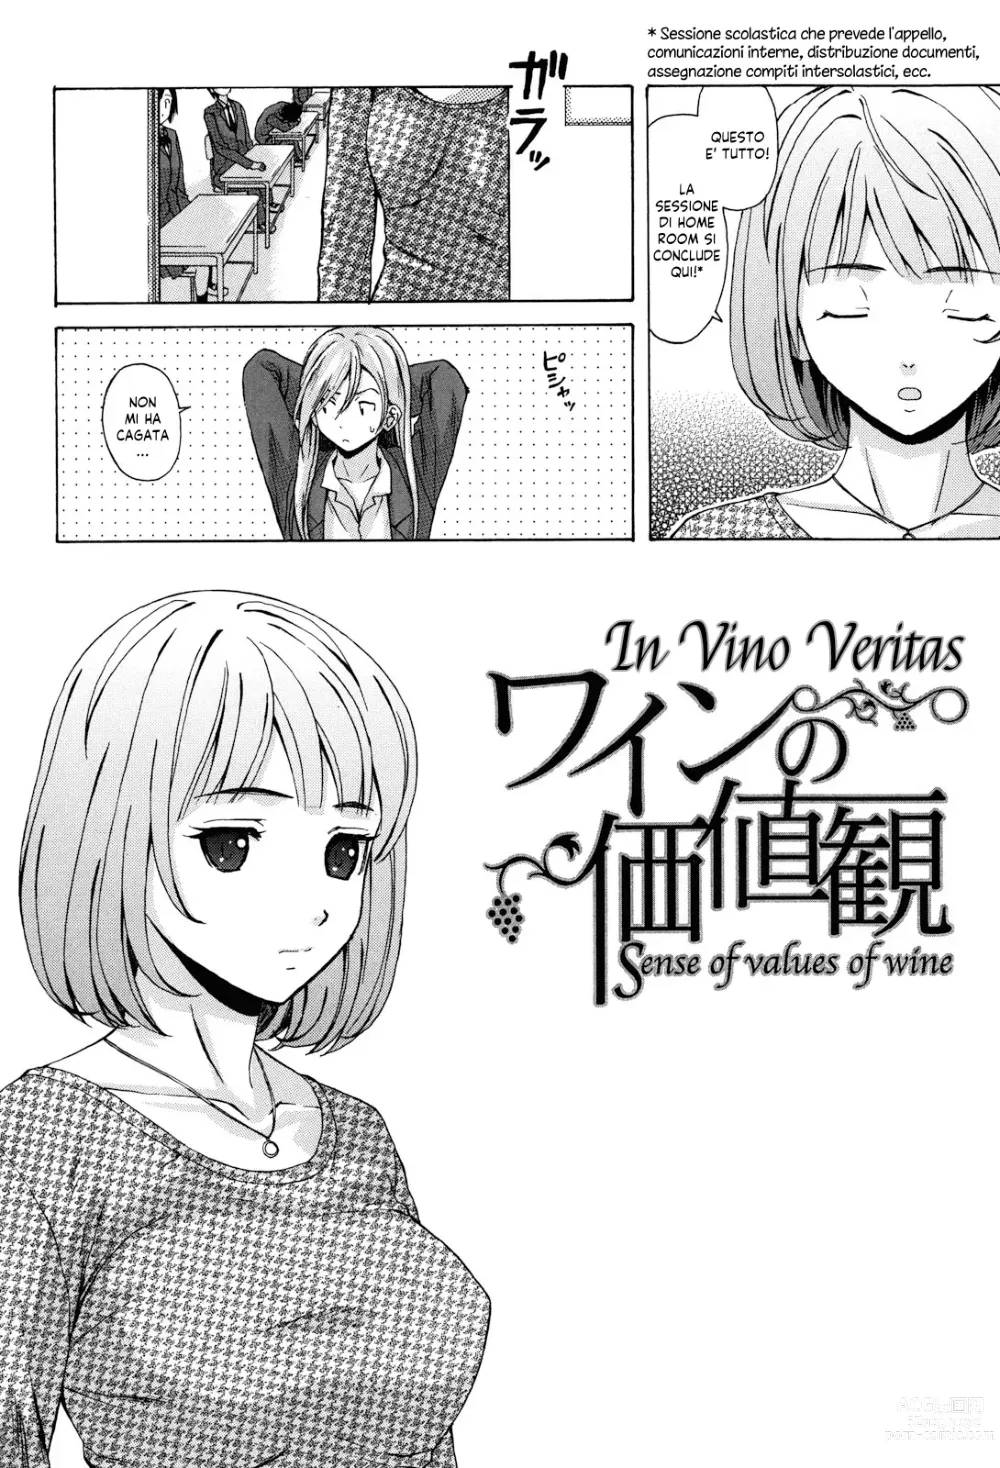 Page 5 of manga Sei Gentilmente Desiderato dalla tua Prof (decensored)